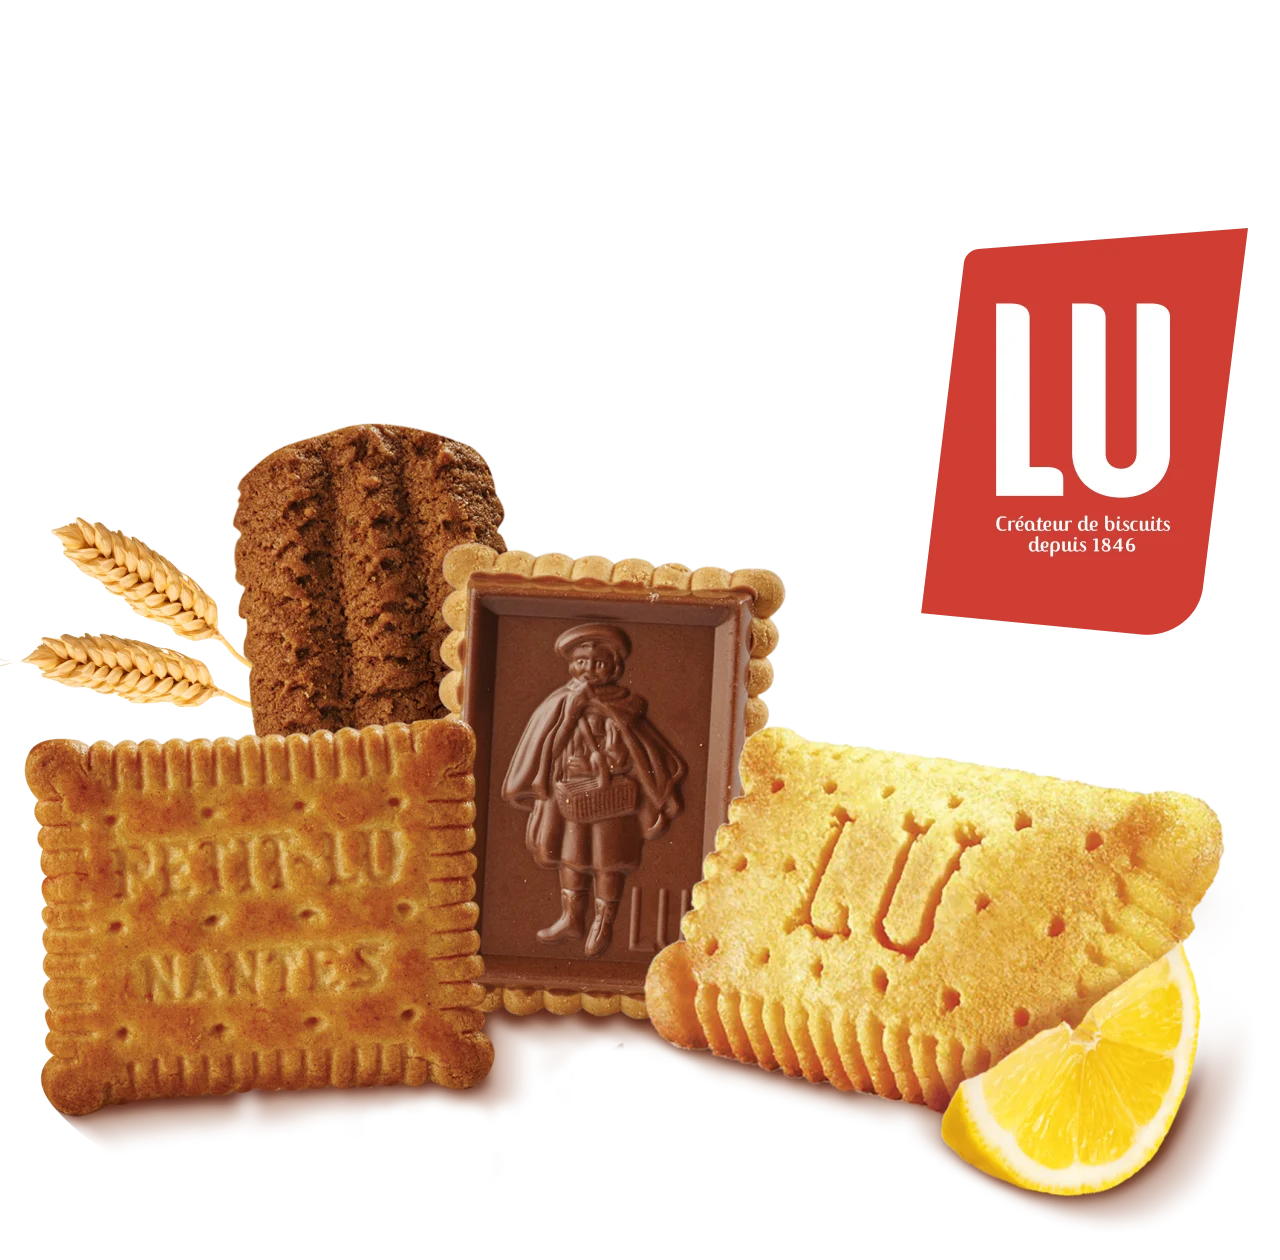 LU Créateur de biscuits depuis 1846 : biscuits LU